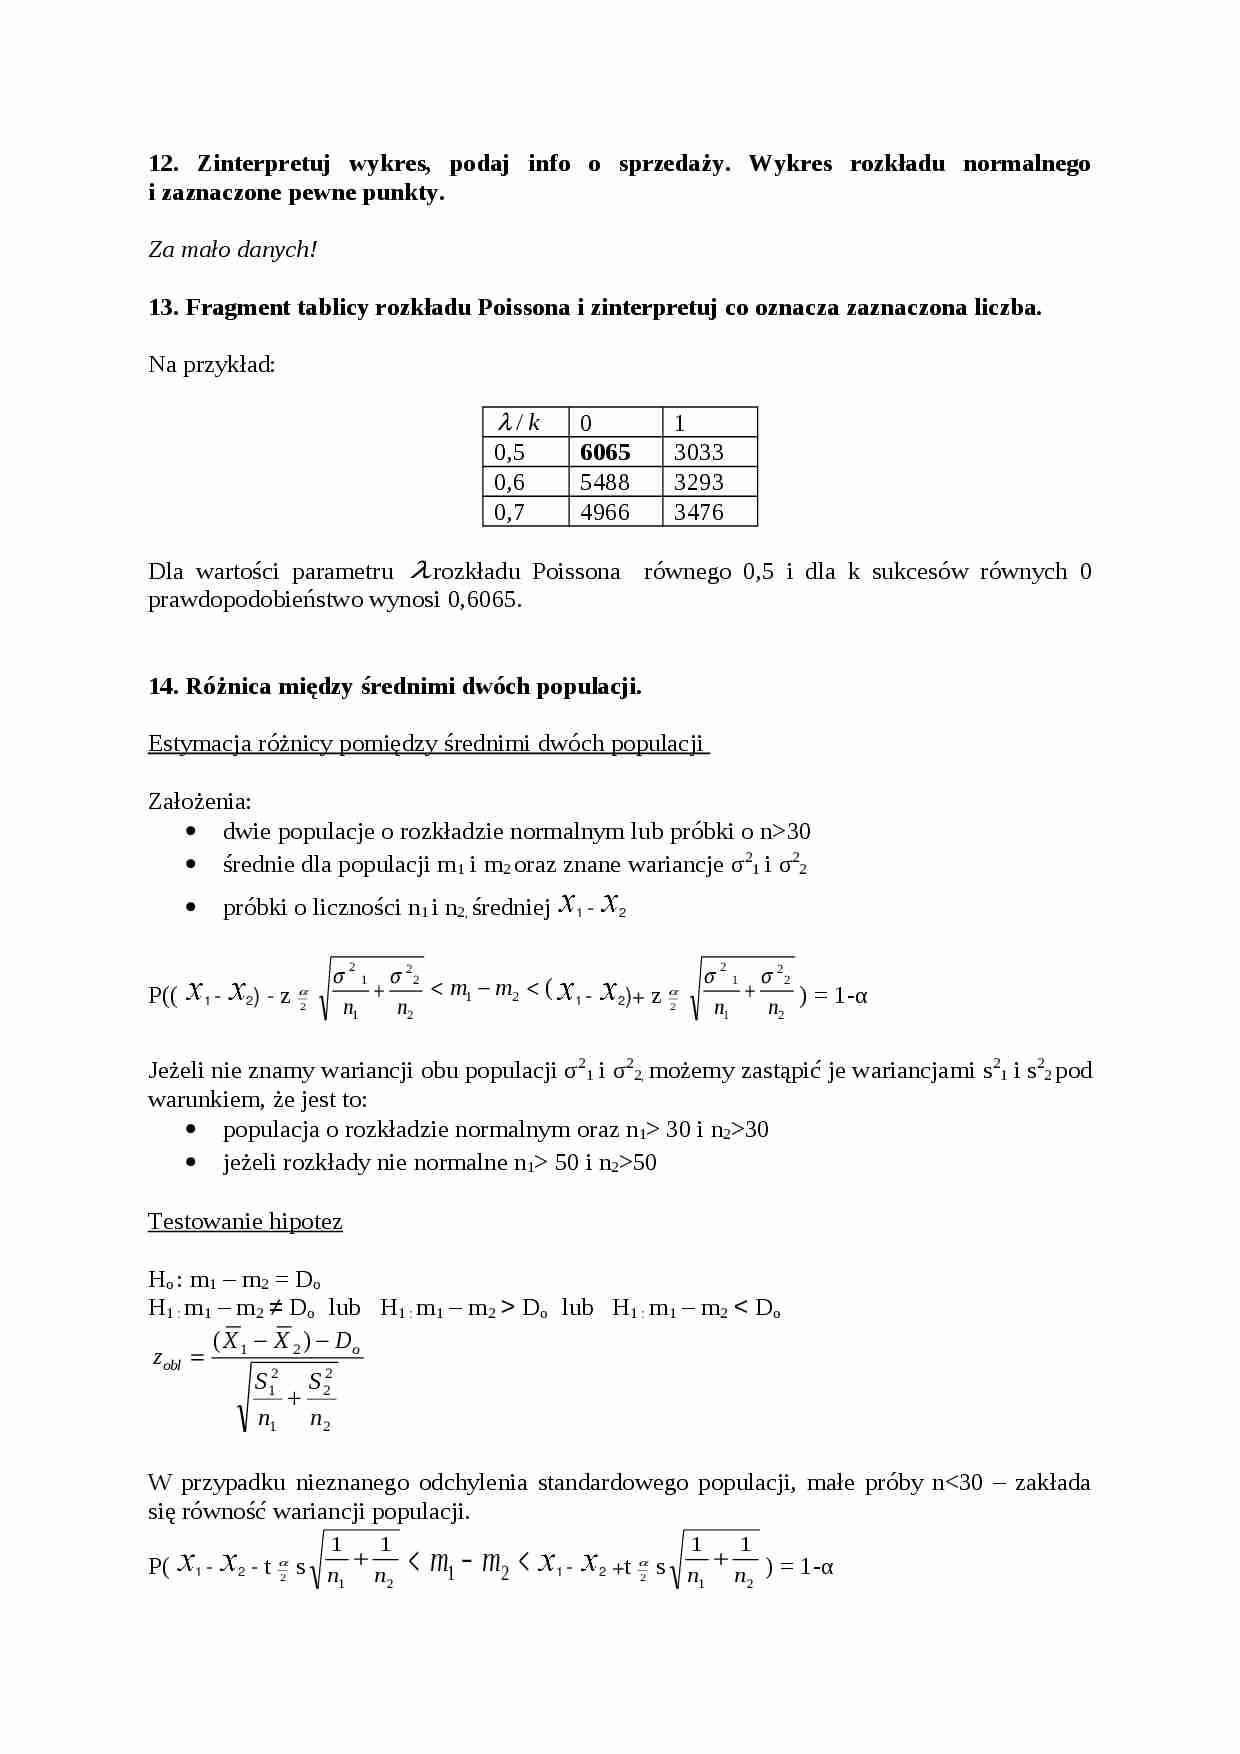 statystyka matematyczna - pytania i odpowiedzi - strona 1